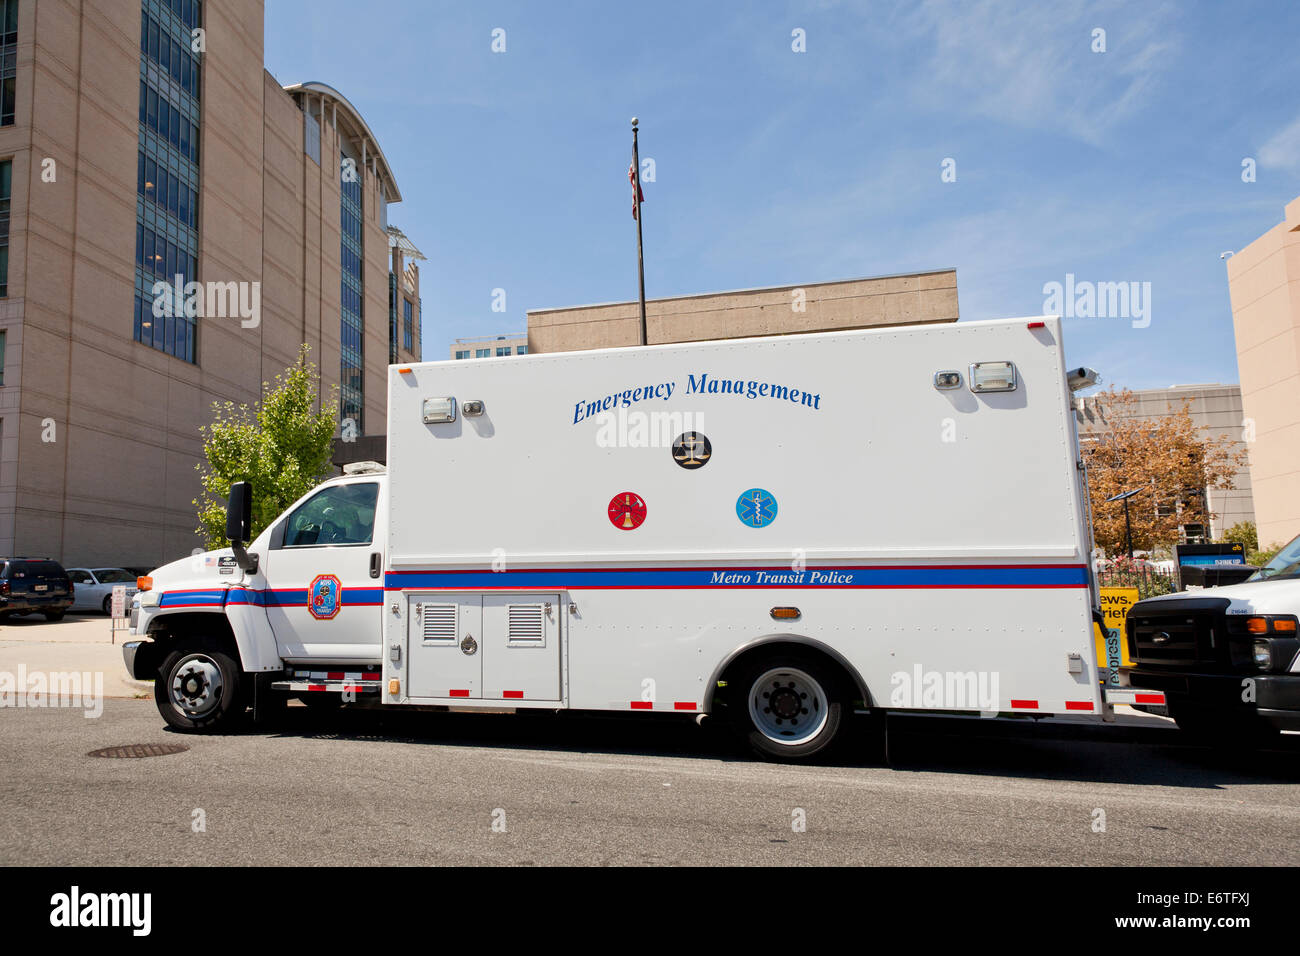 Metro Transit Police Emergency Management truck - Washington, DC USA Stock Photo